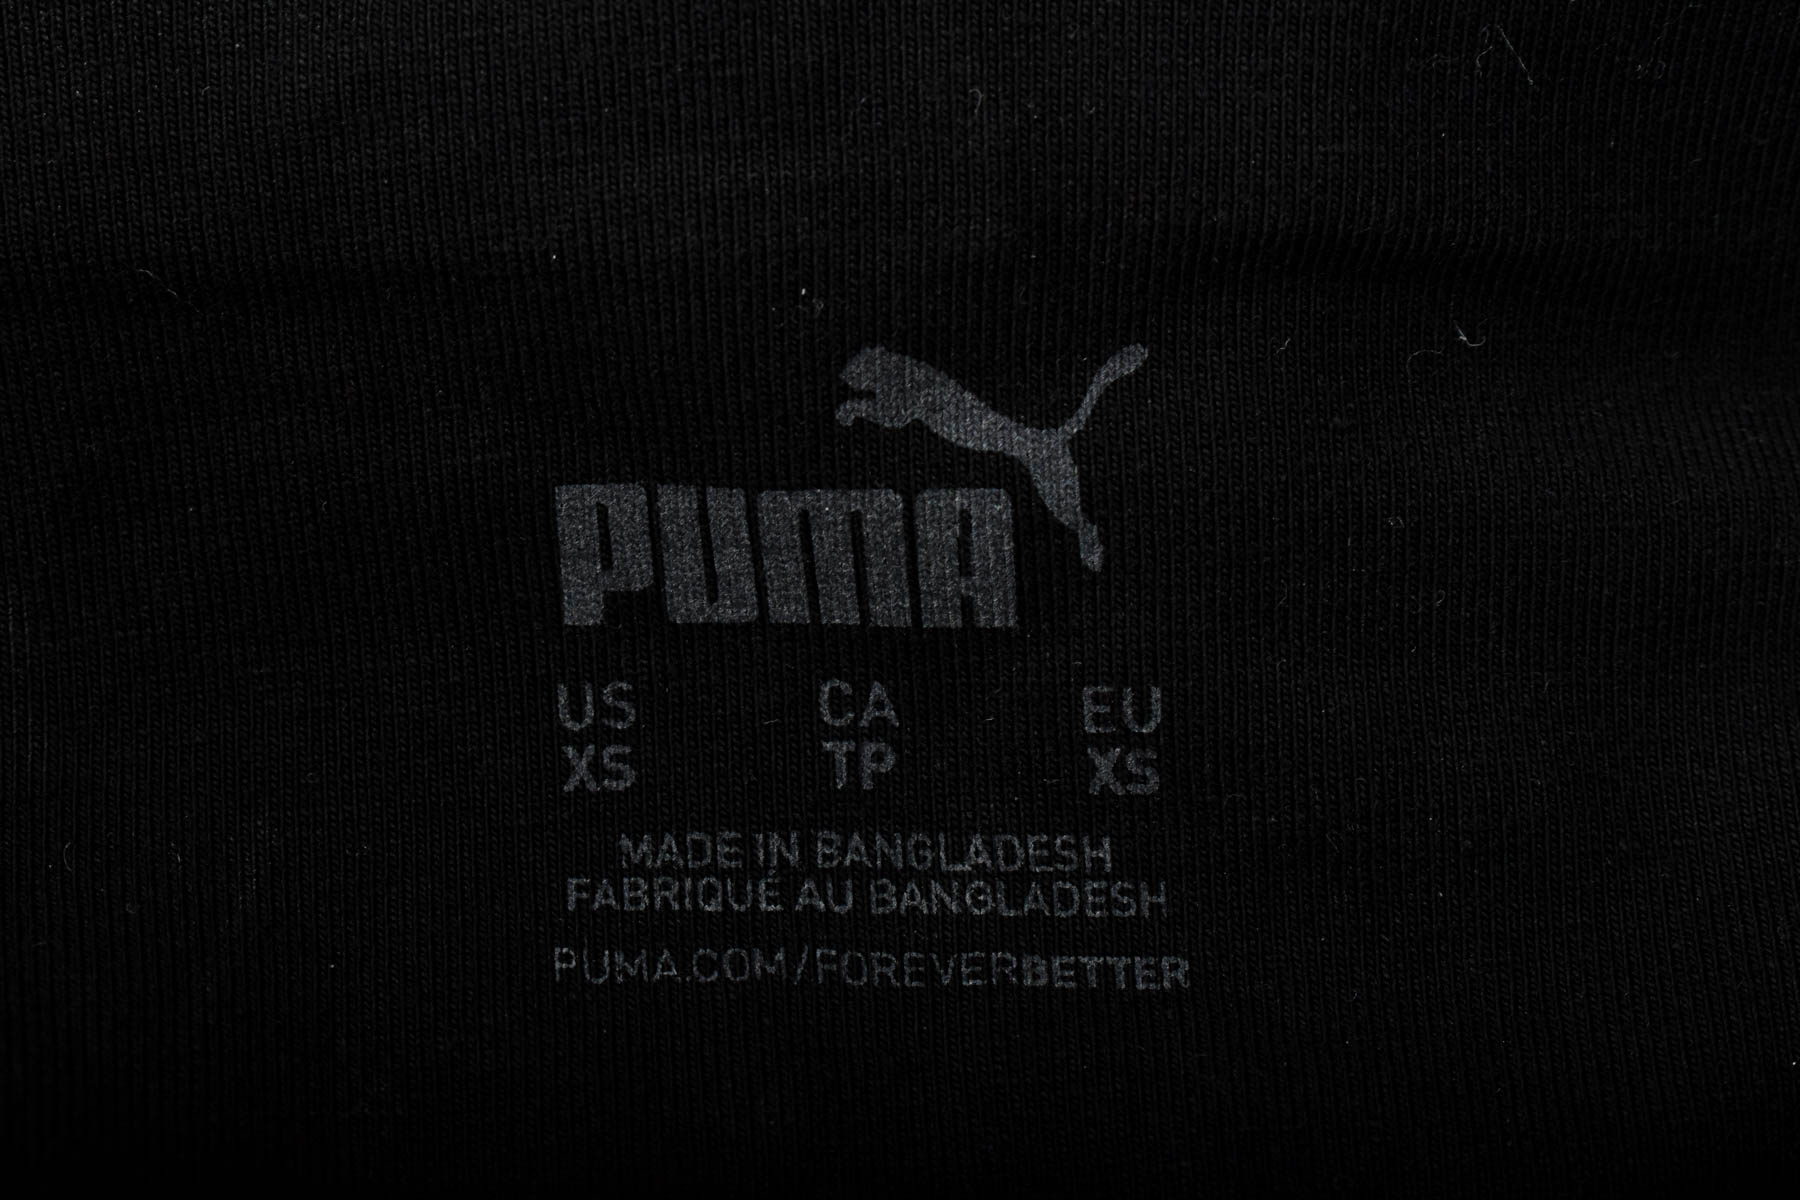 Leggings - Puma - 2